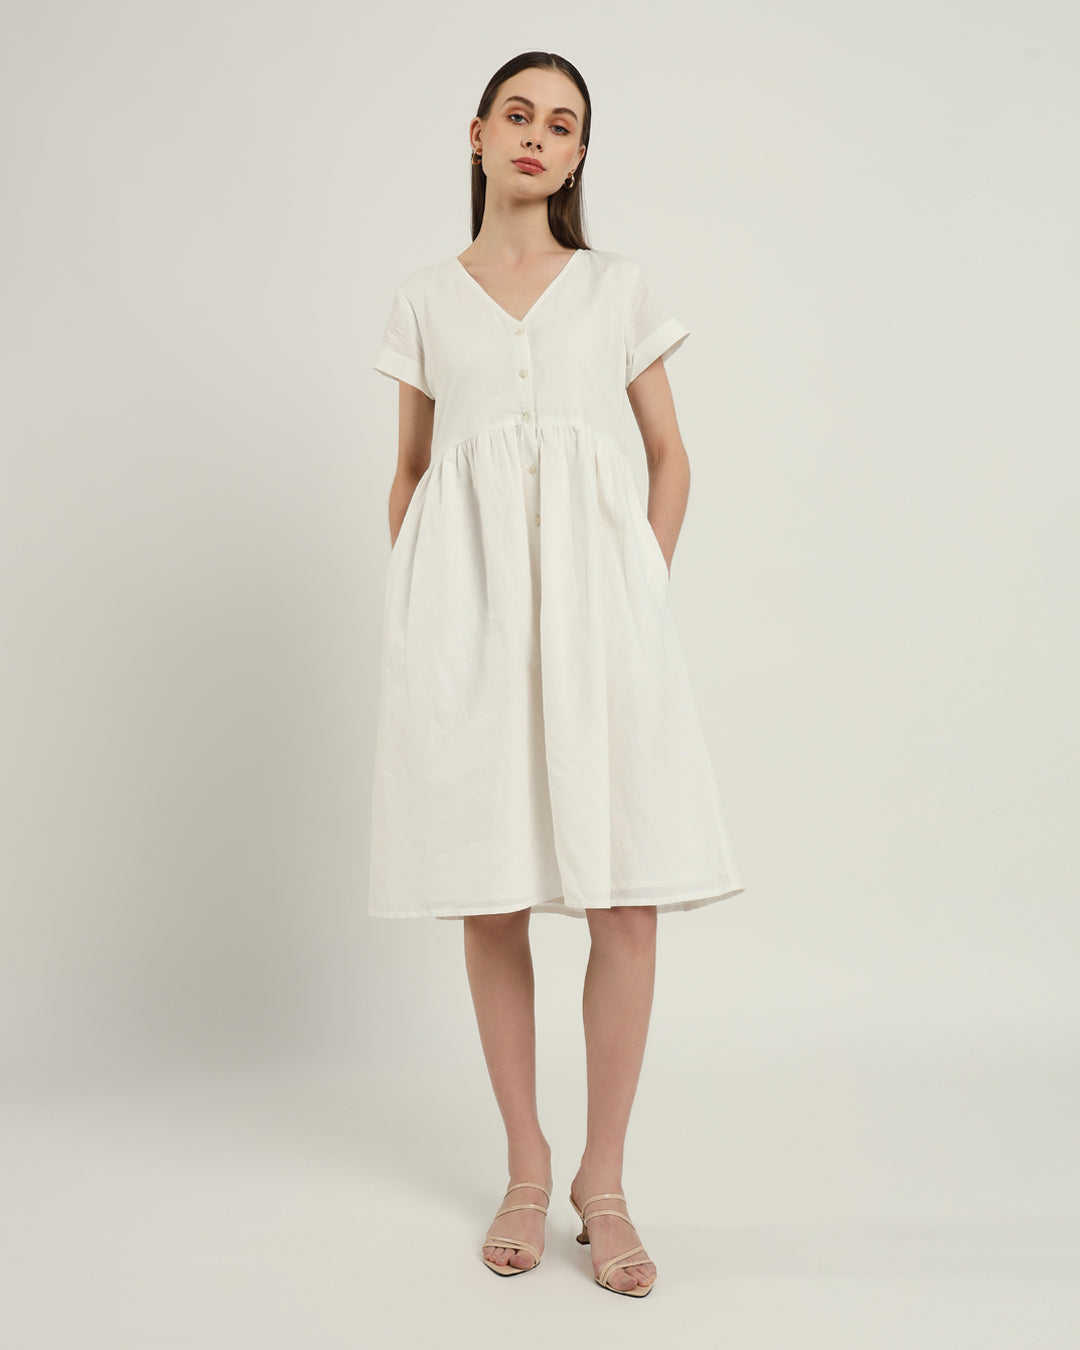 The Valence Daisy White Linen Dress